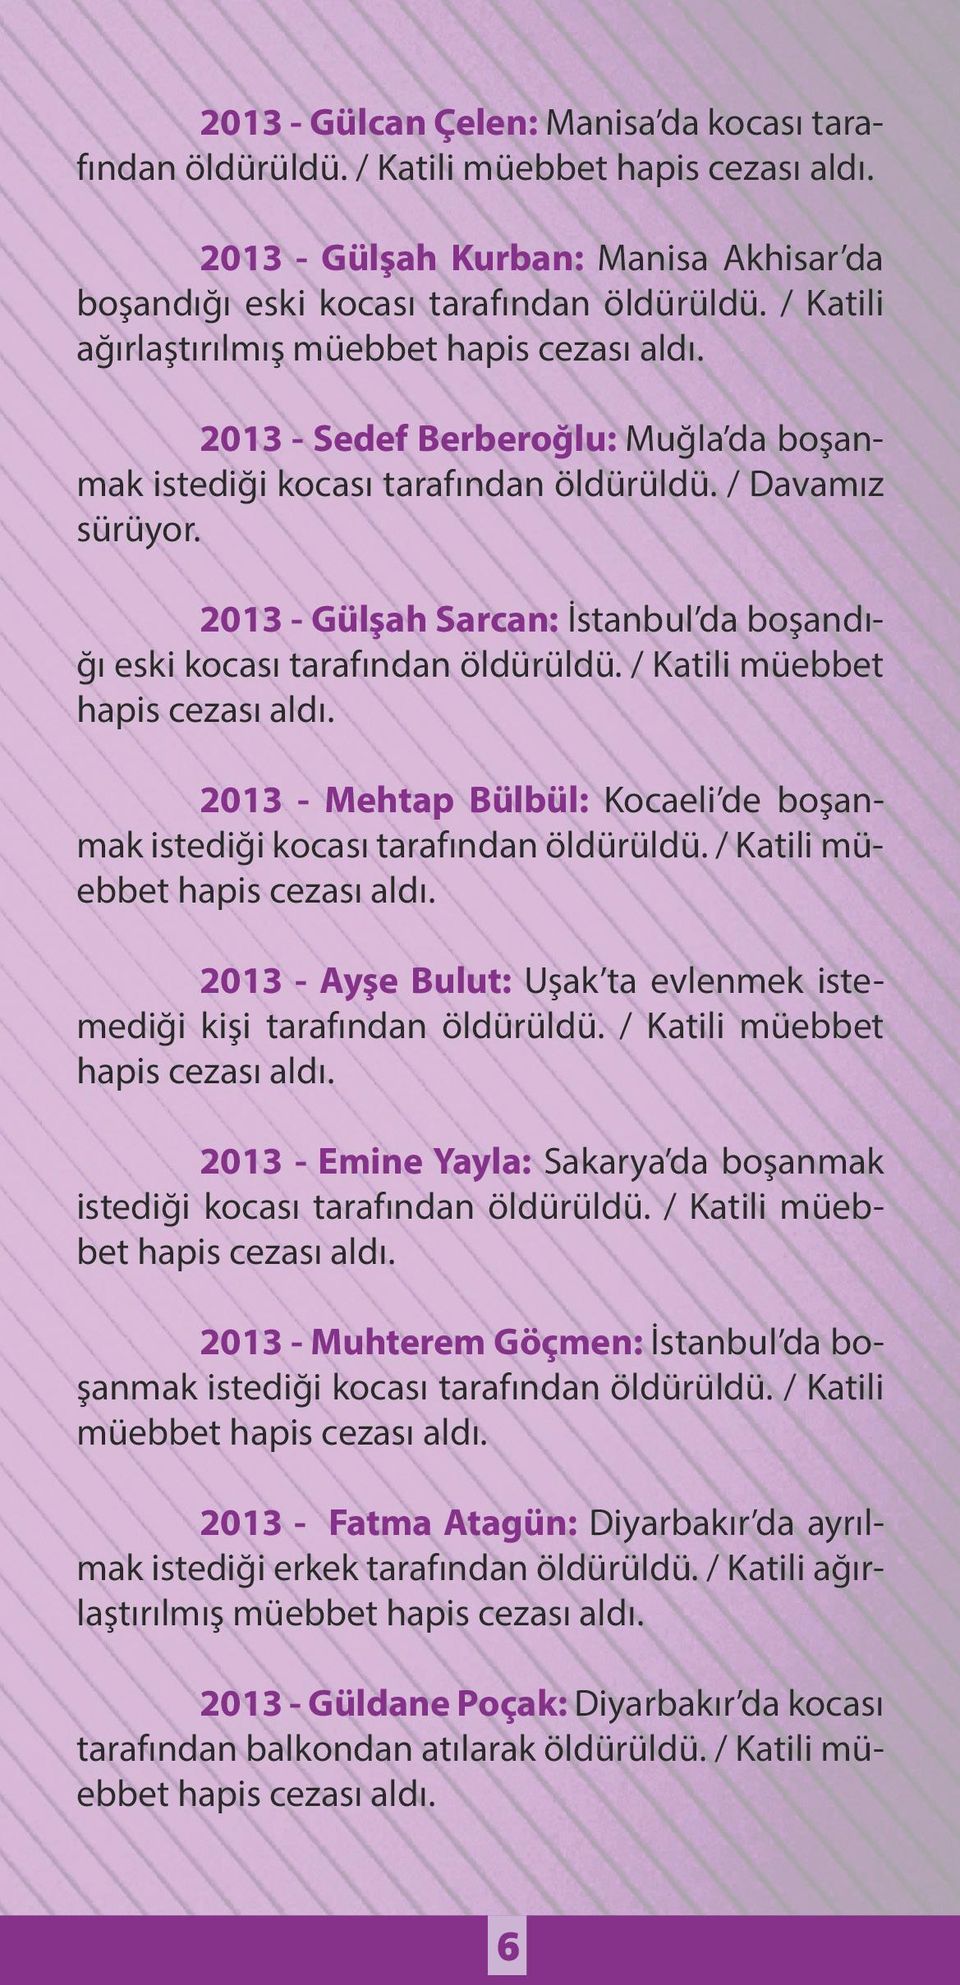 2013 - Gülşah Sarcan: İstanbul da boşandığı eski kocası tarafından öldürüldü. / Katili müebbet 2013 - Mehtap Bülbül: Kocaeli de boşanmak istediği kocası tarafından öldürüldü.